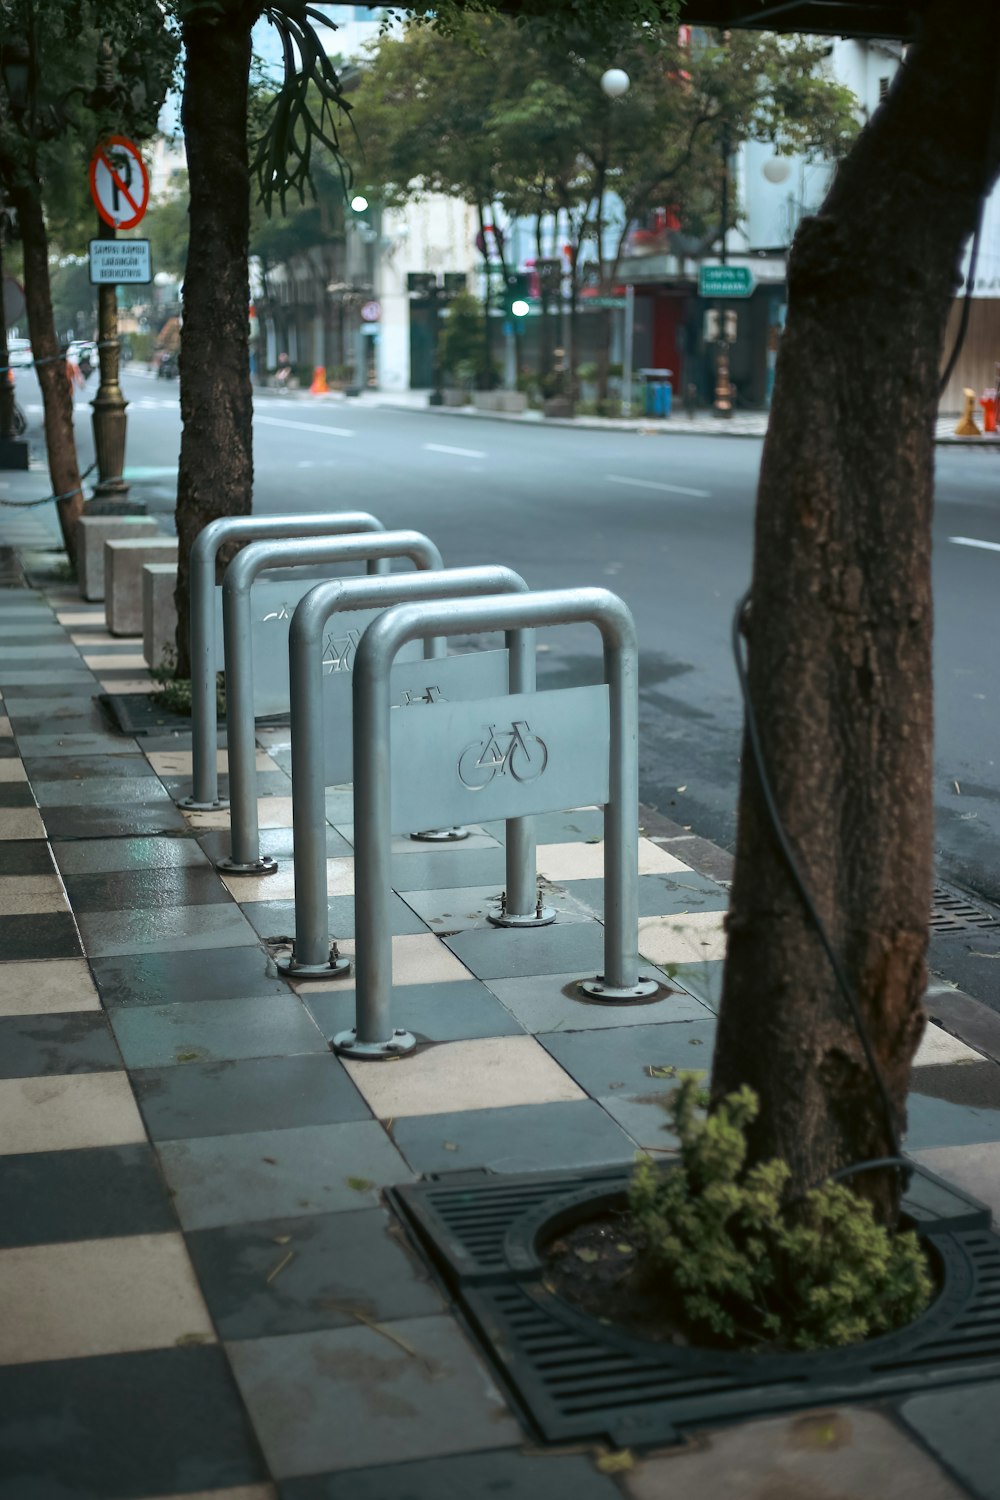 a row of bike racks on the side of a street